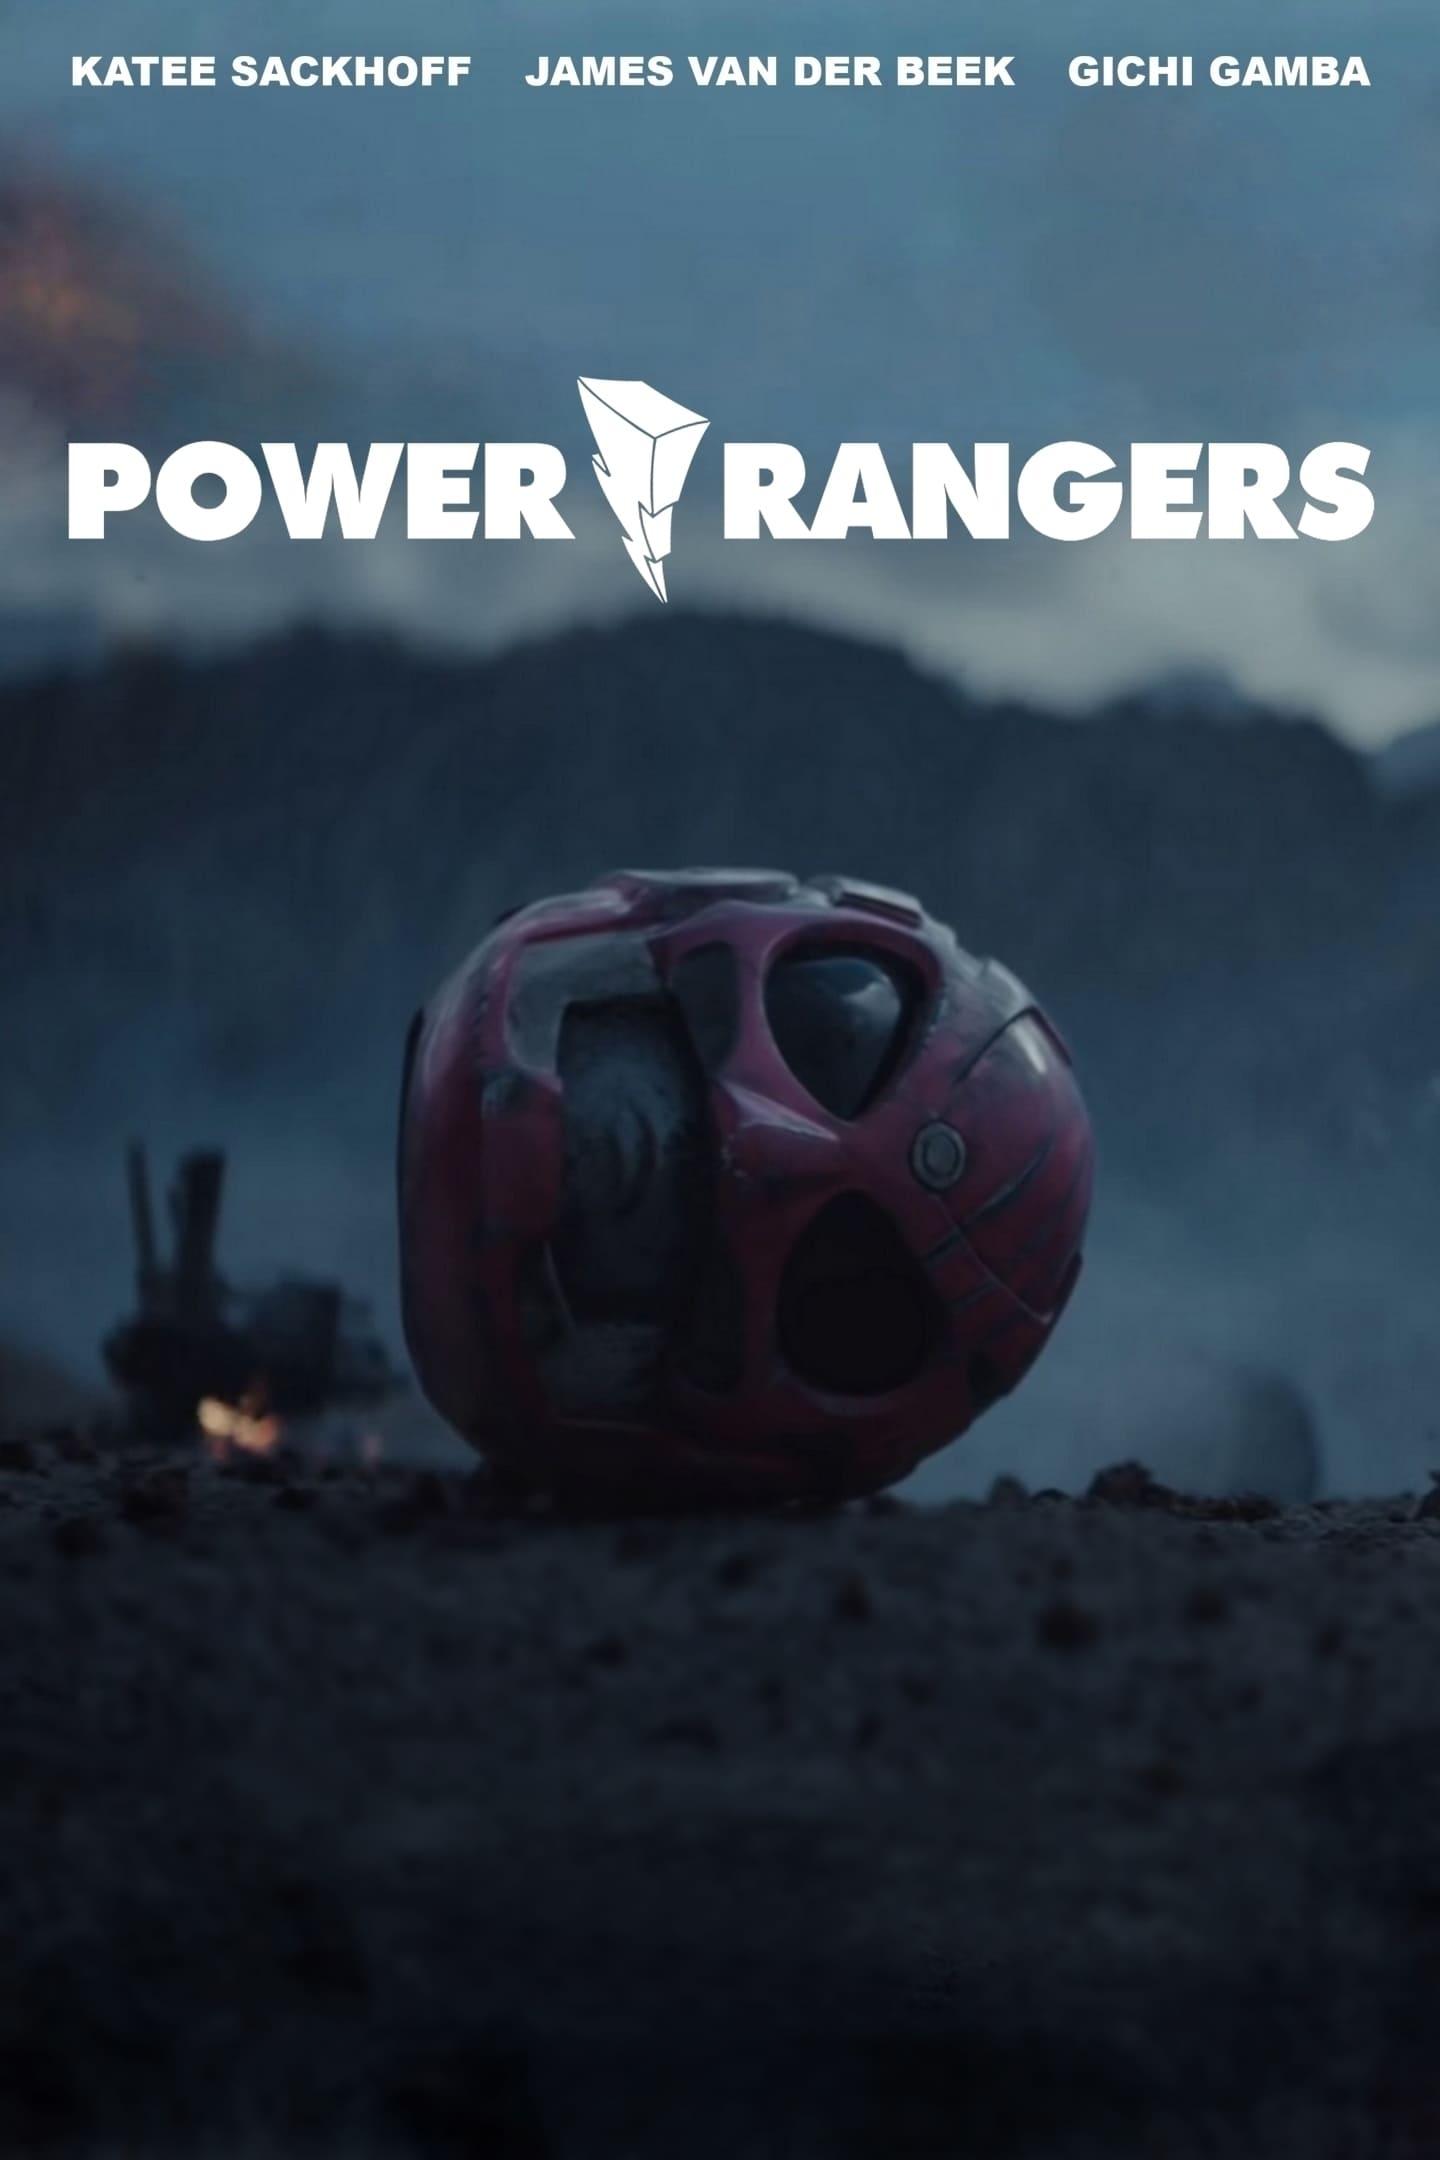 Power/Rangers poster